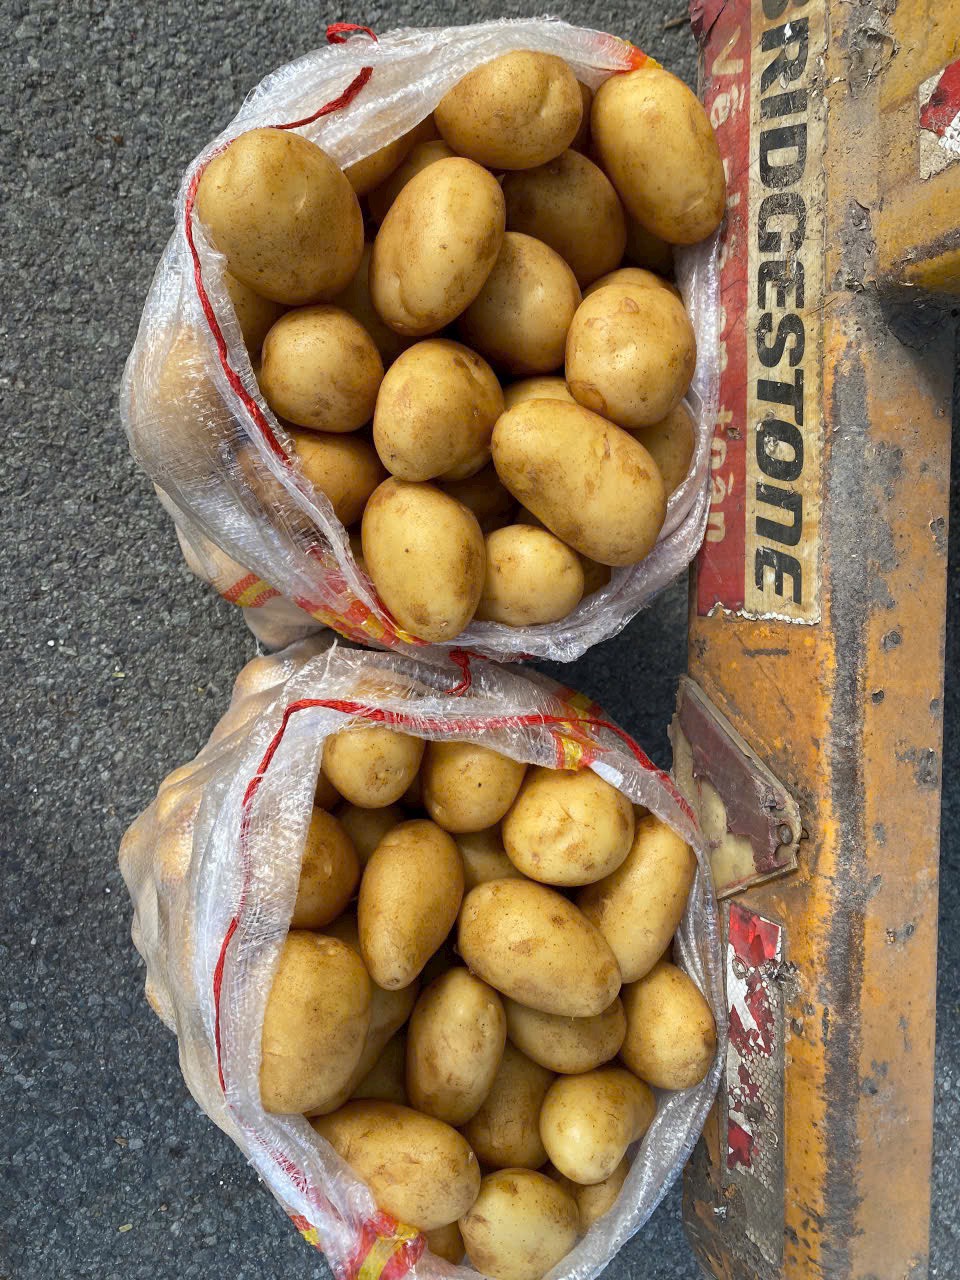 Cần tìm đơn vị vận tải vận chuyển hàng khoai tây đi Malaysia